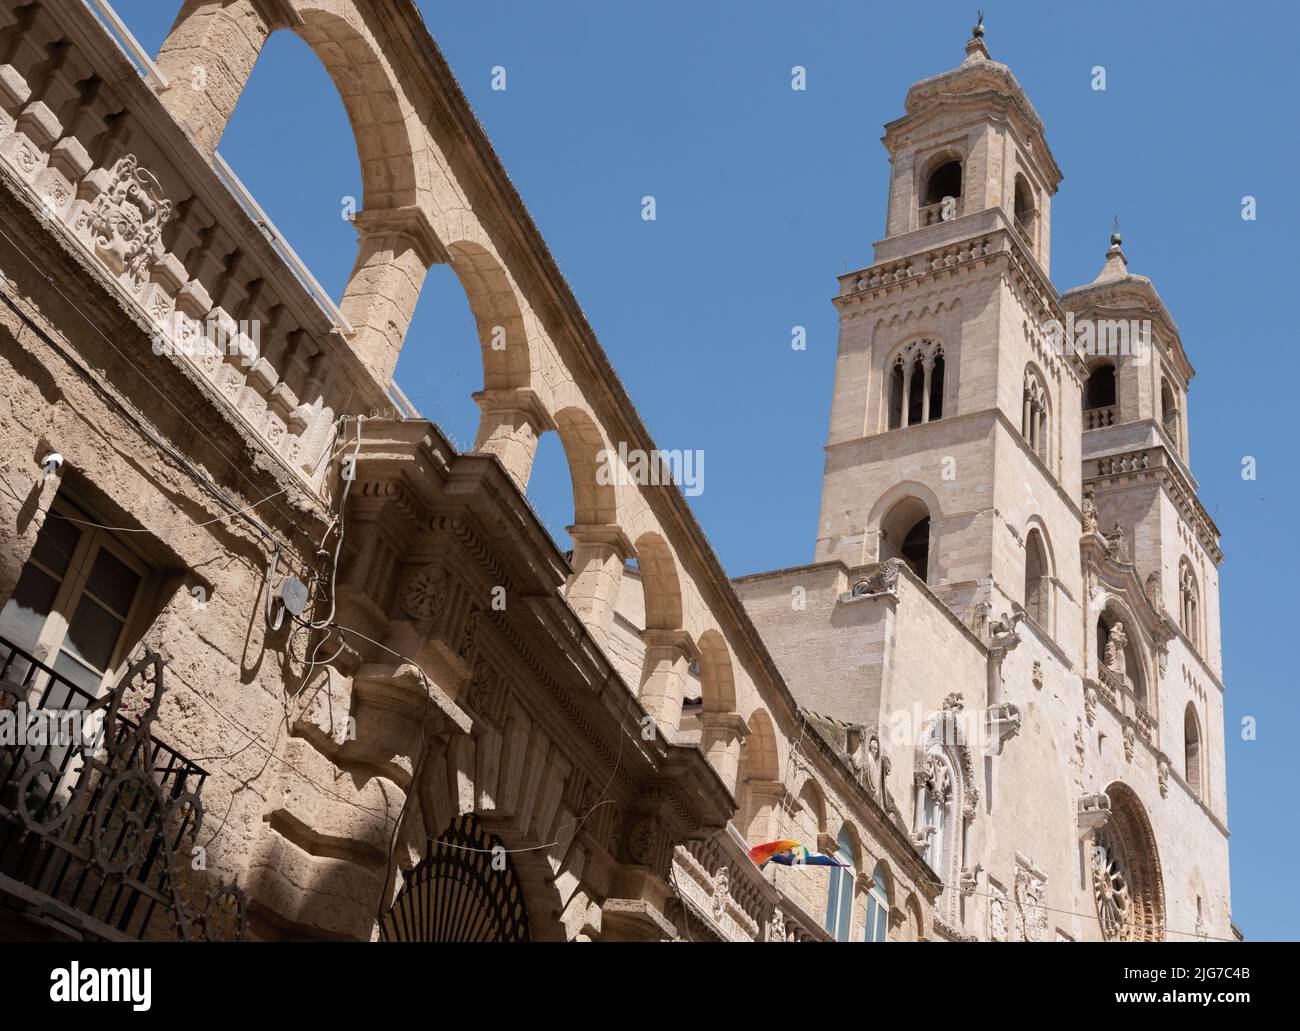 La cathédrale baroque de la ville des Pouilles d'Altamura en Italie avec ses tours doubles, ses fenêtres roses et ses arches ornementales sur le côté. Banque D'Images